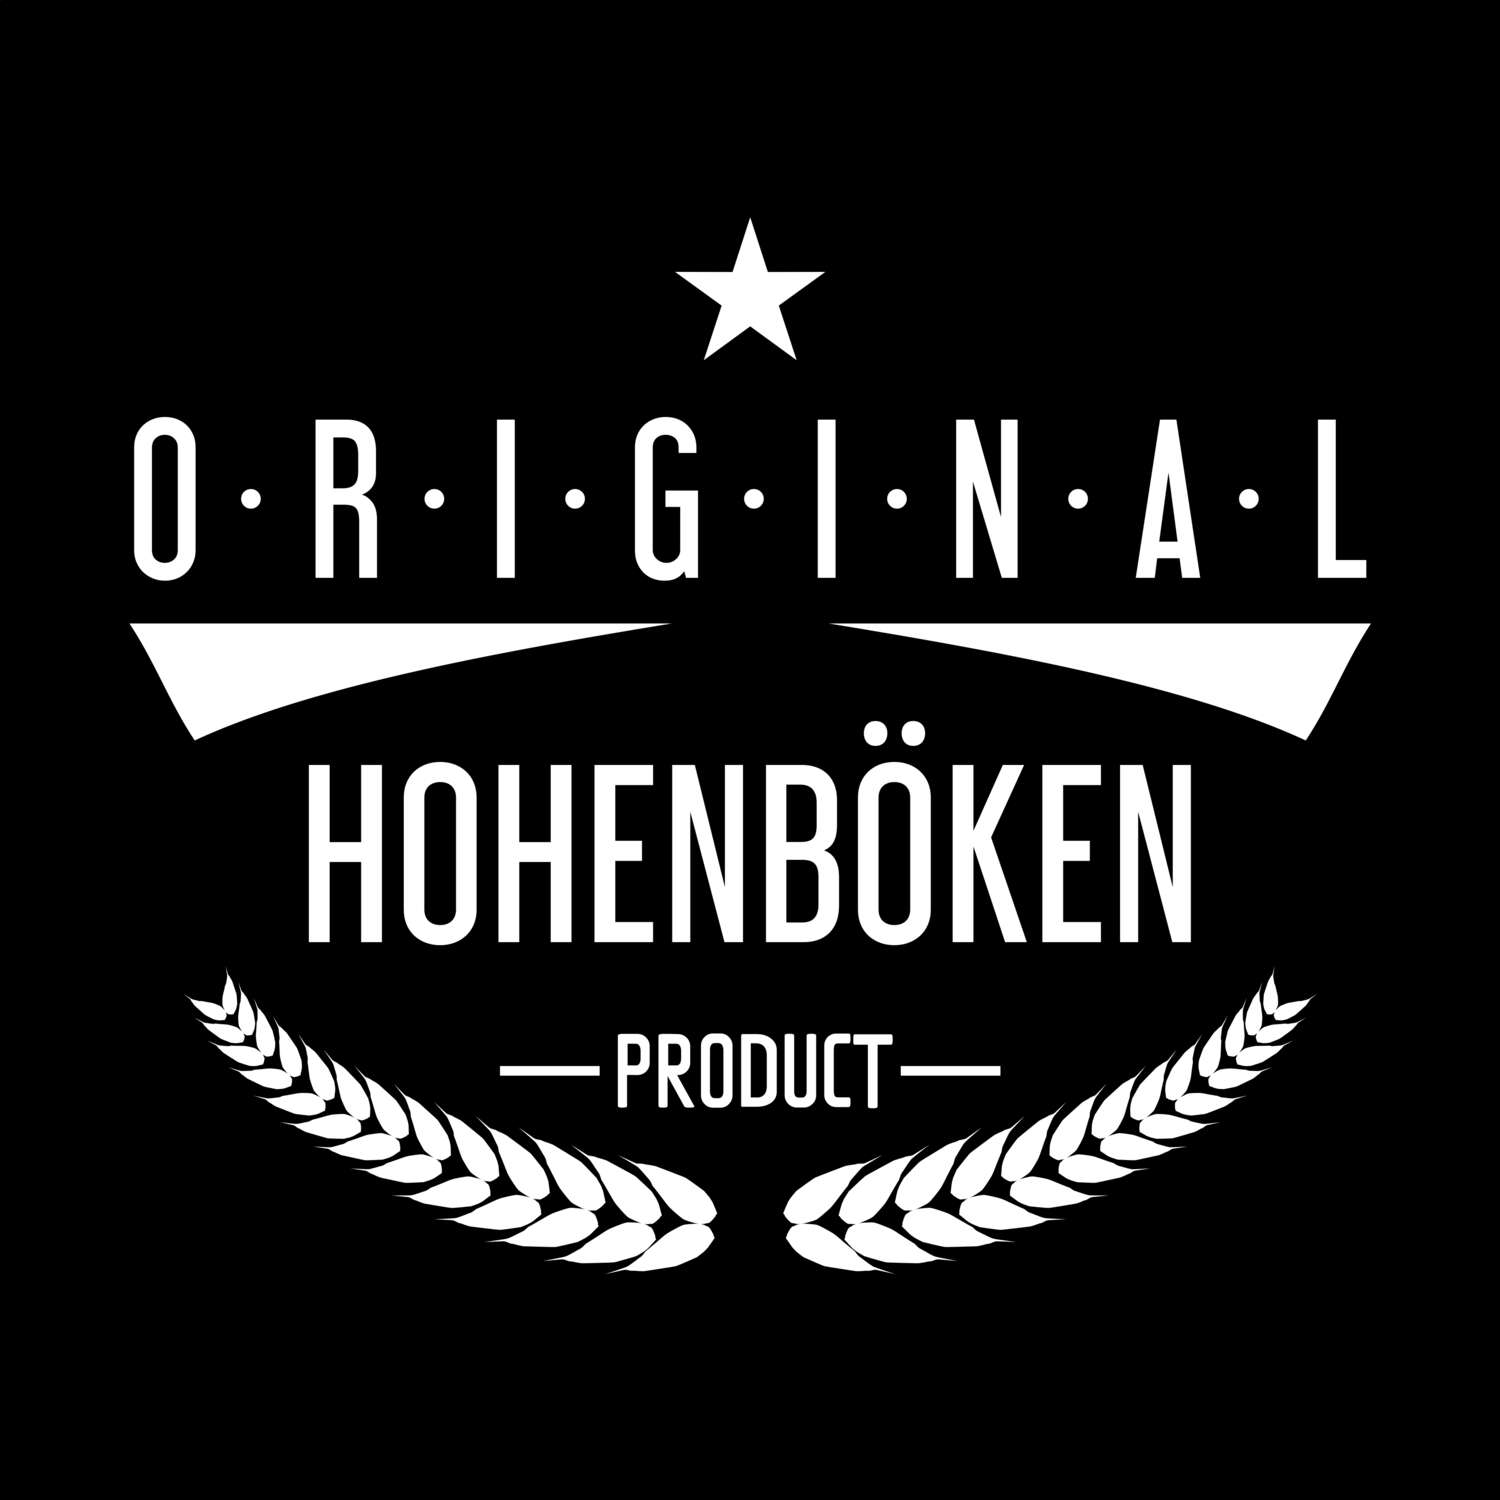 Hohenböken T-Shirt »Original Product«